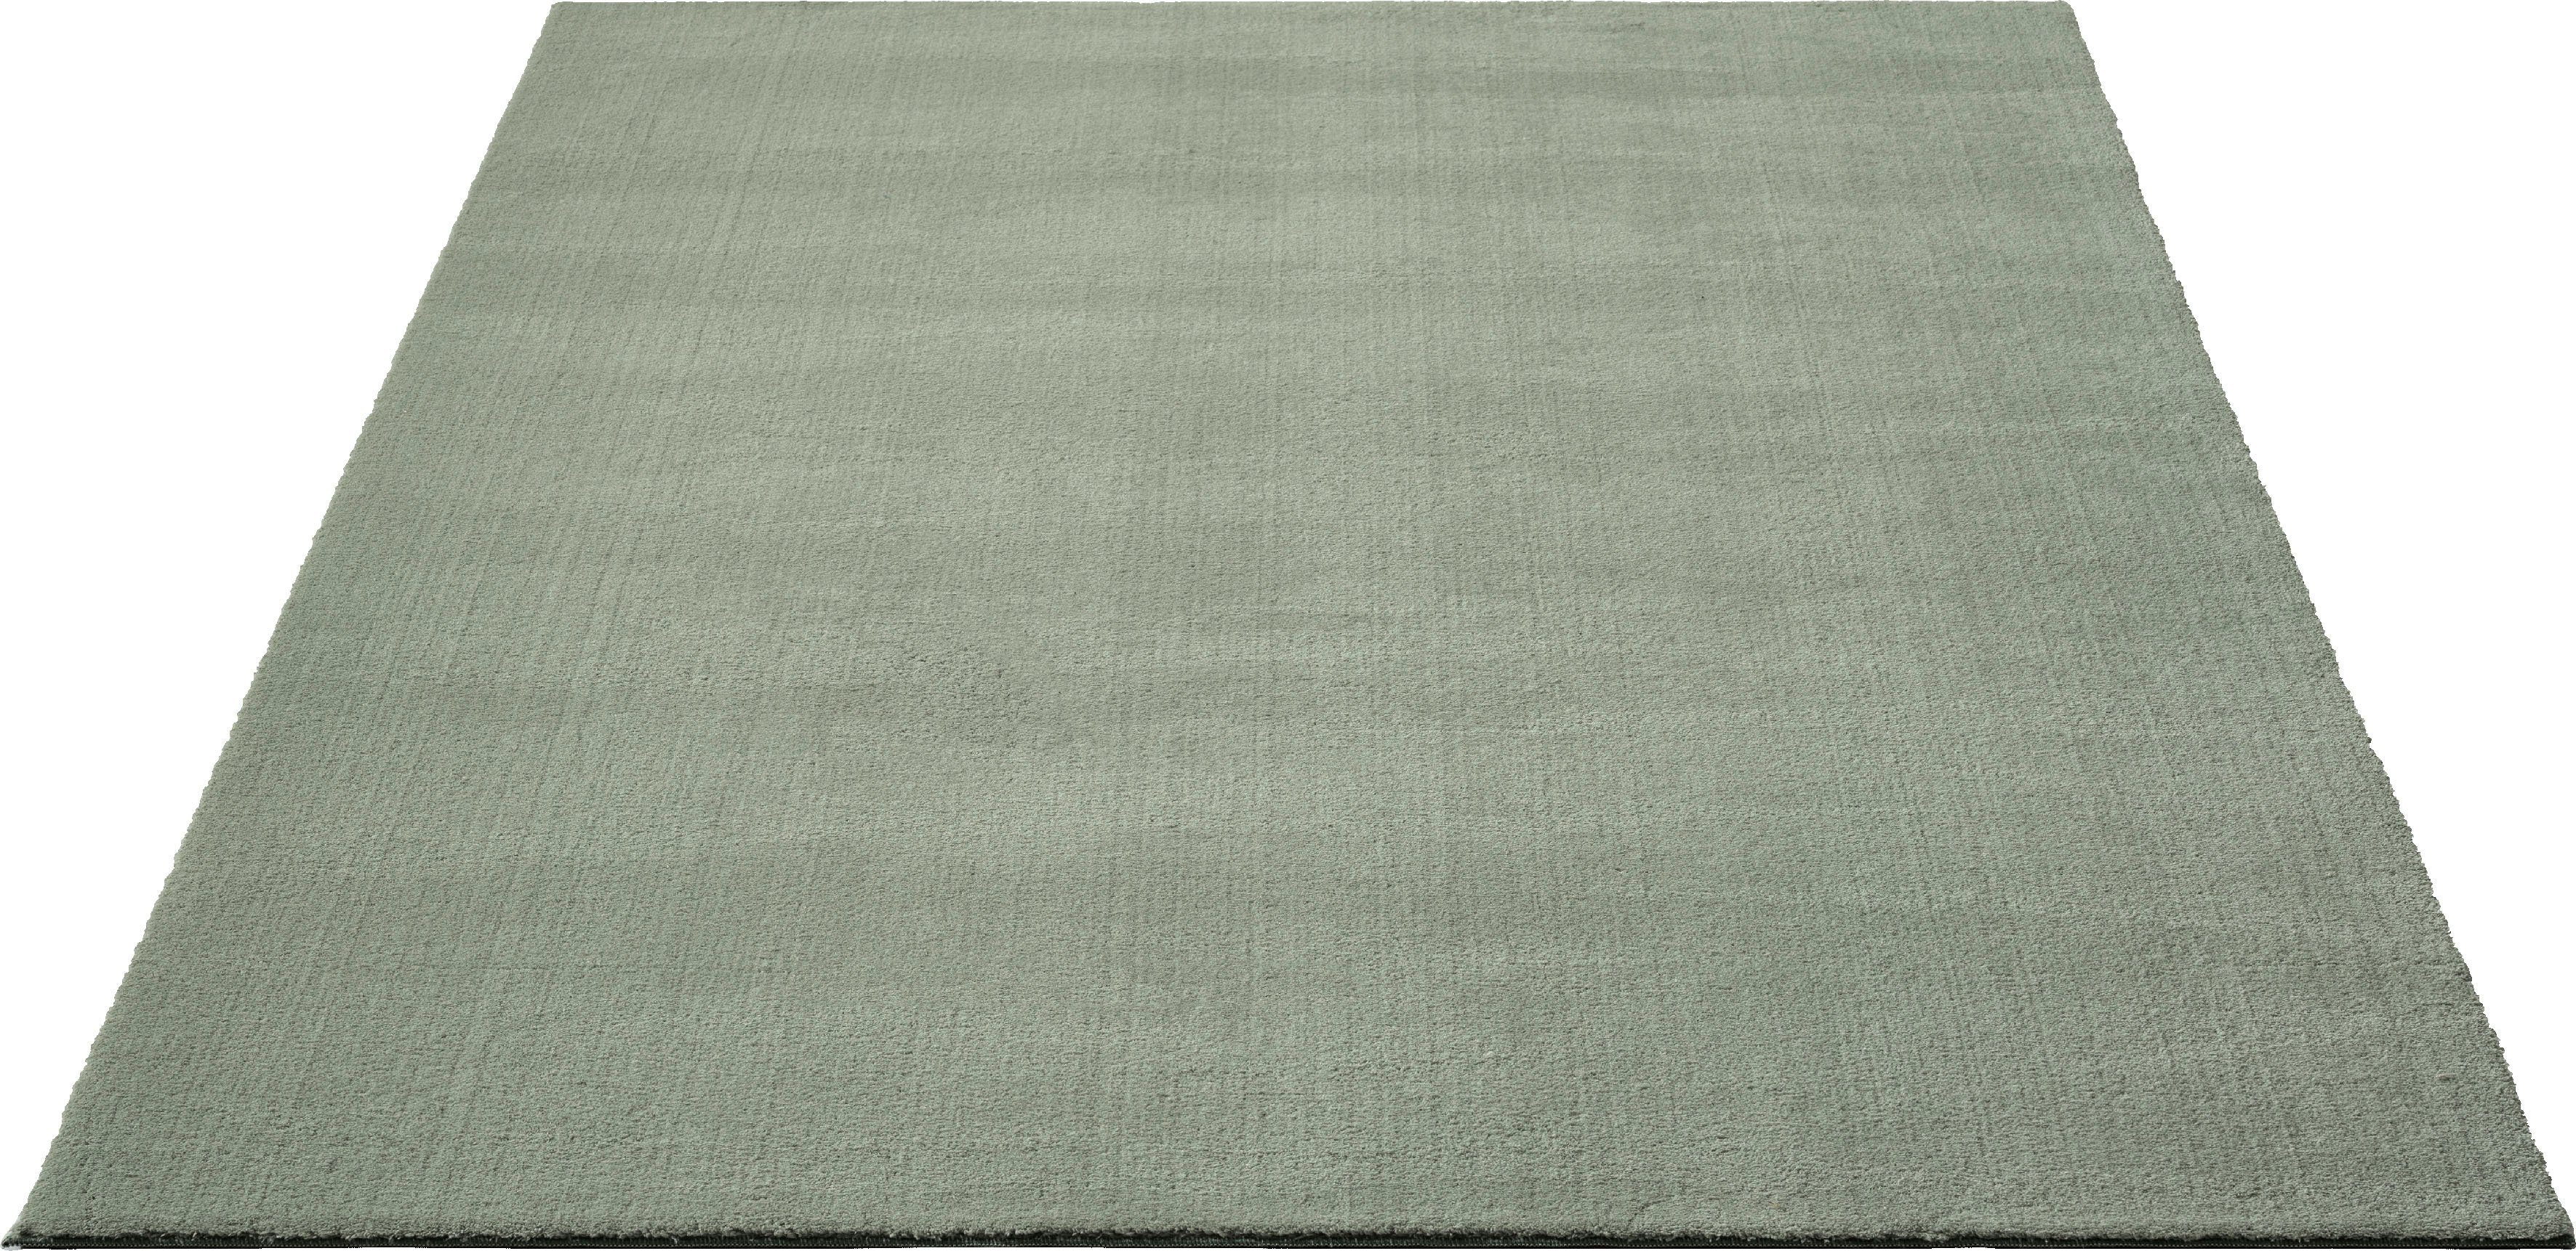 Teppich Loft 37, Kunstfellteppich, merinos, rechteckig, Höhe: 19 mm, weich und kuschelig, Fell Haptik, Anti-Rutsch-Unterseite, waschbar grün